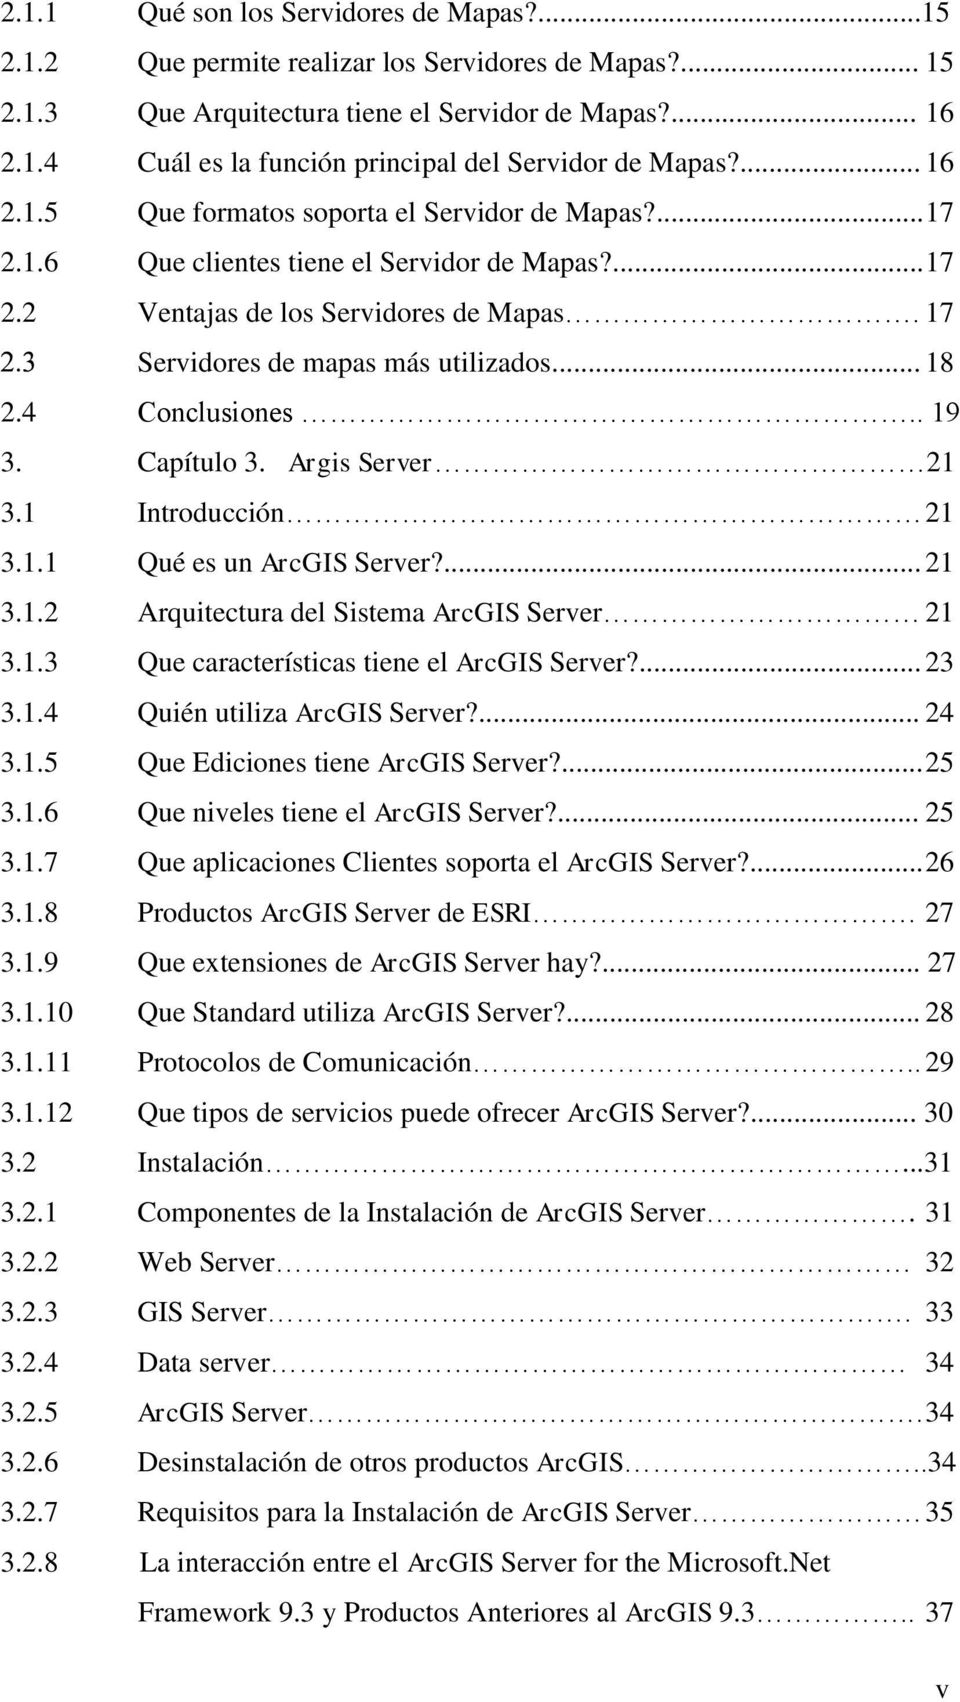 4 Conclusiones.. 19 3. Capítulo 3. Argis Server 21 3.1 Introducción 21 3.1.1 Qué es un ArcGIS Server?... 21 3.1.2 Arquitectura del Sistema ArcGIS Server 21 3.1.3 Que características tiene el ArcGIS Server?